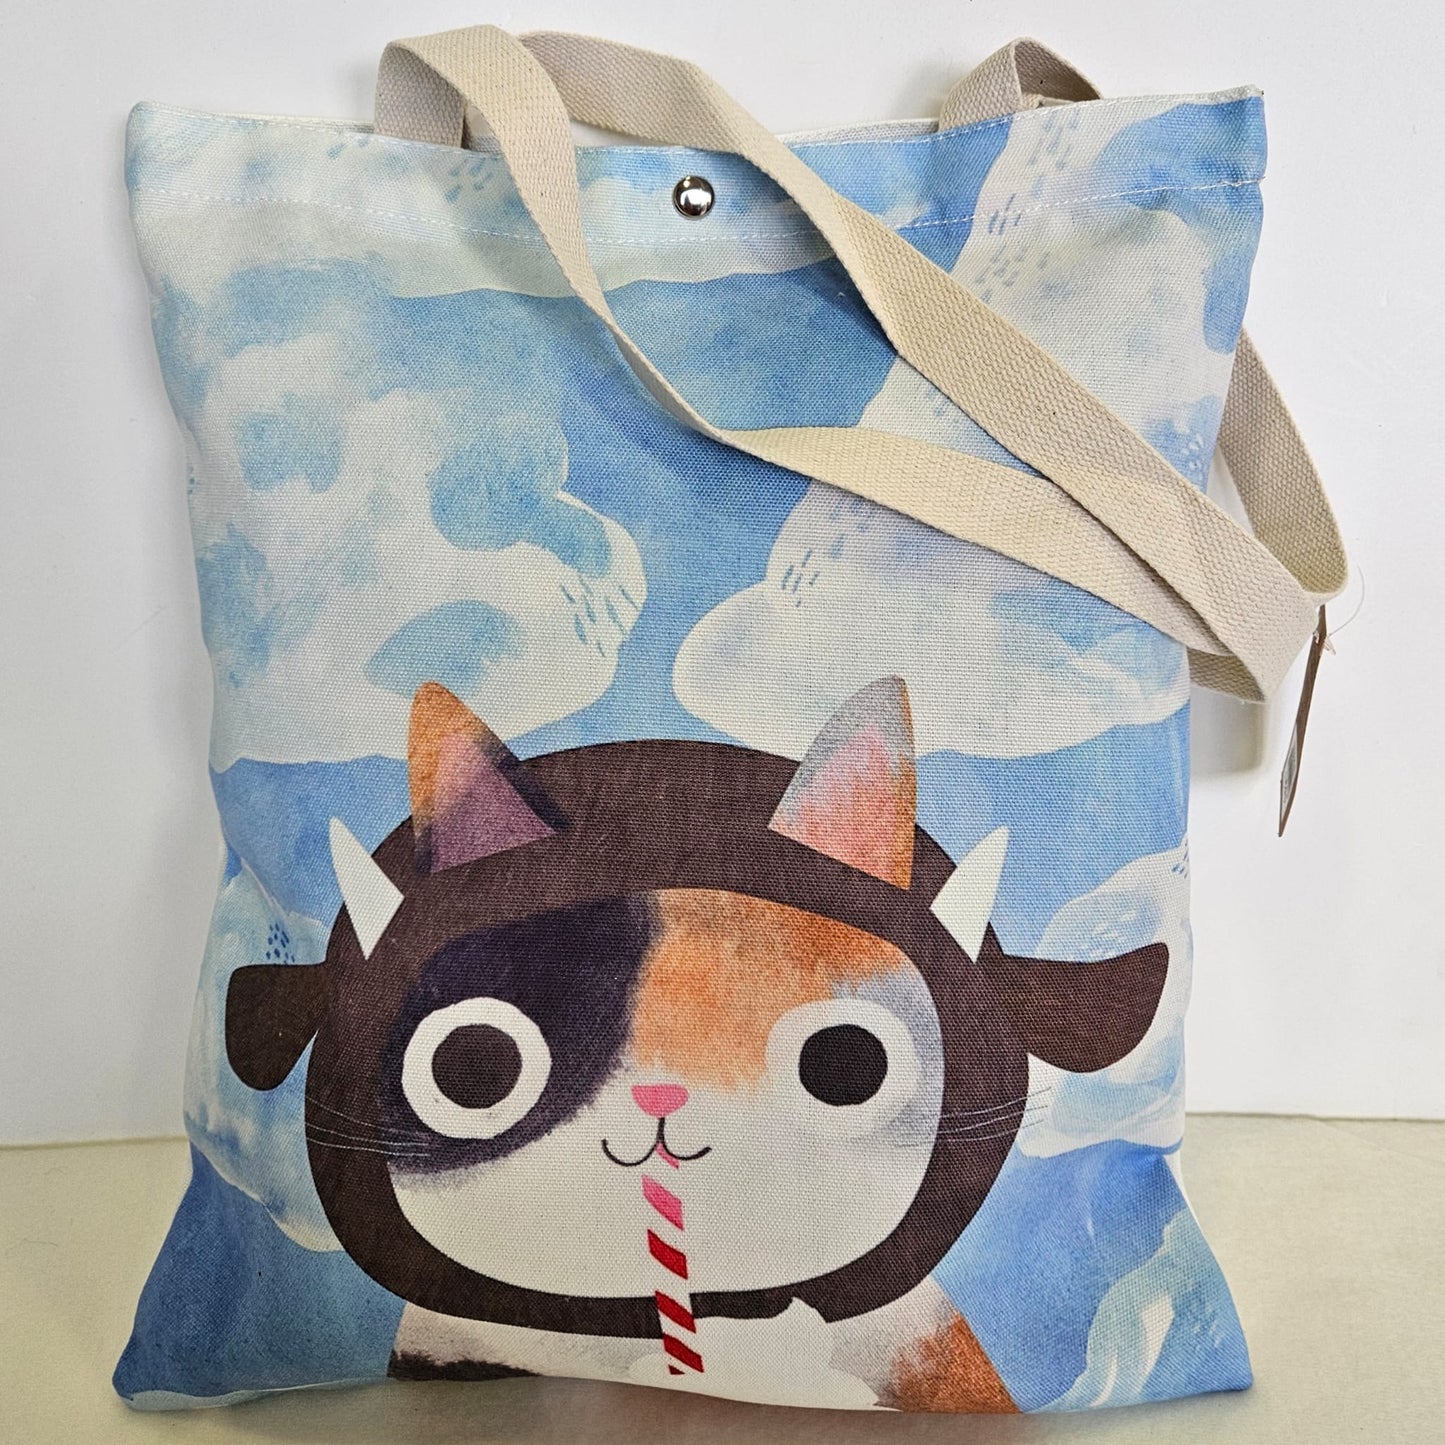 Bolsa tote bag de tela estampado gatito con fondo de nubes